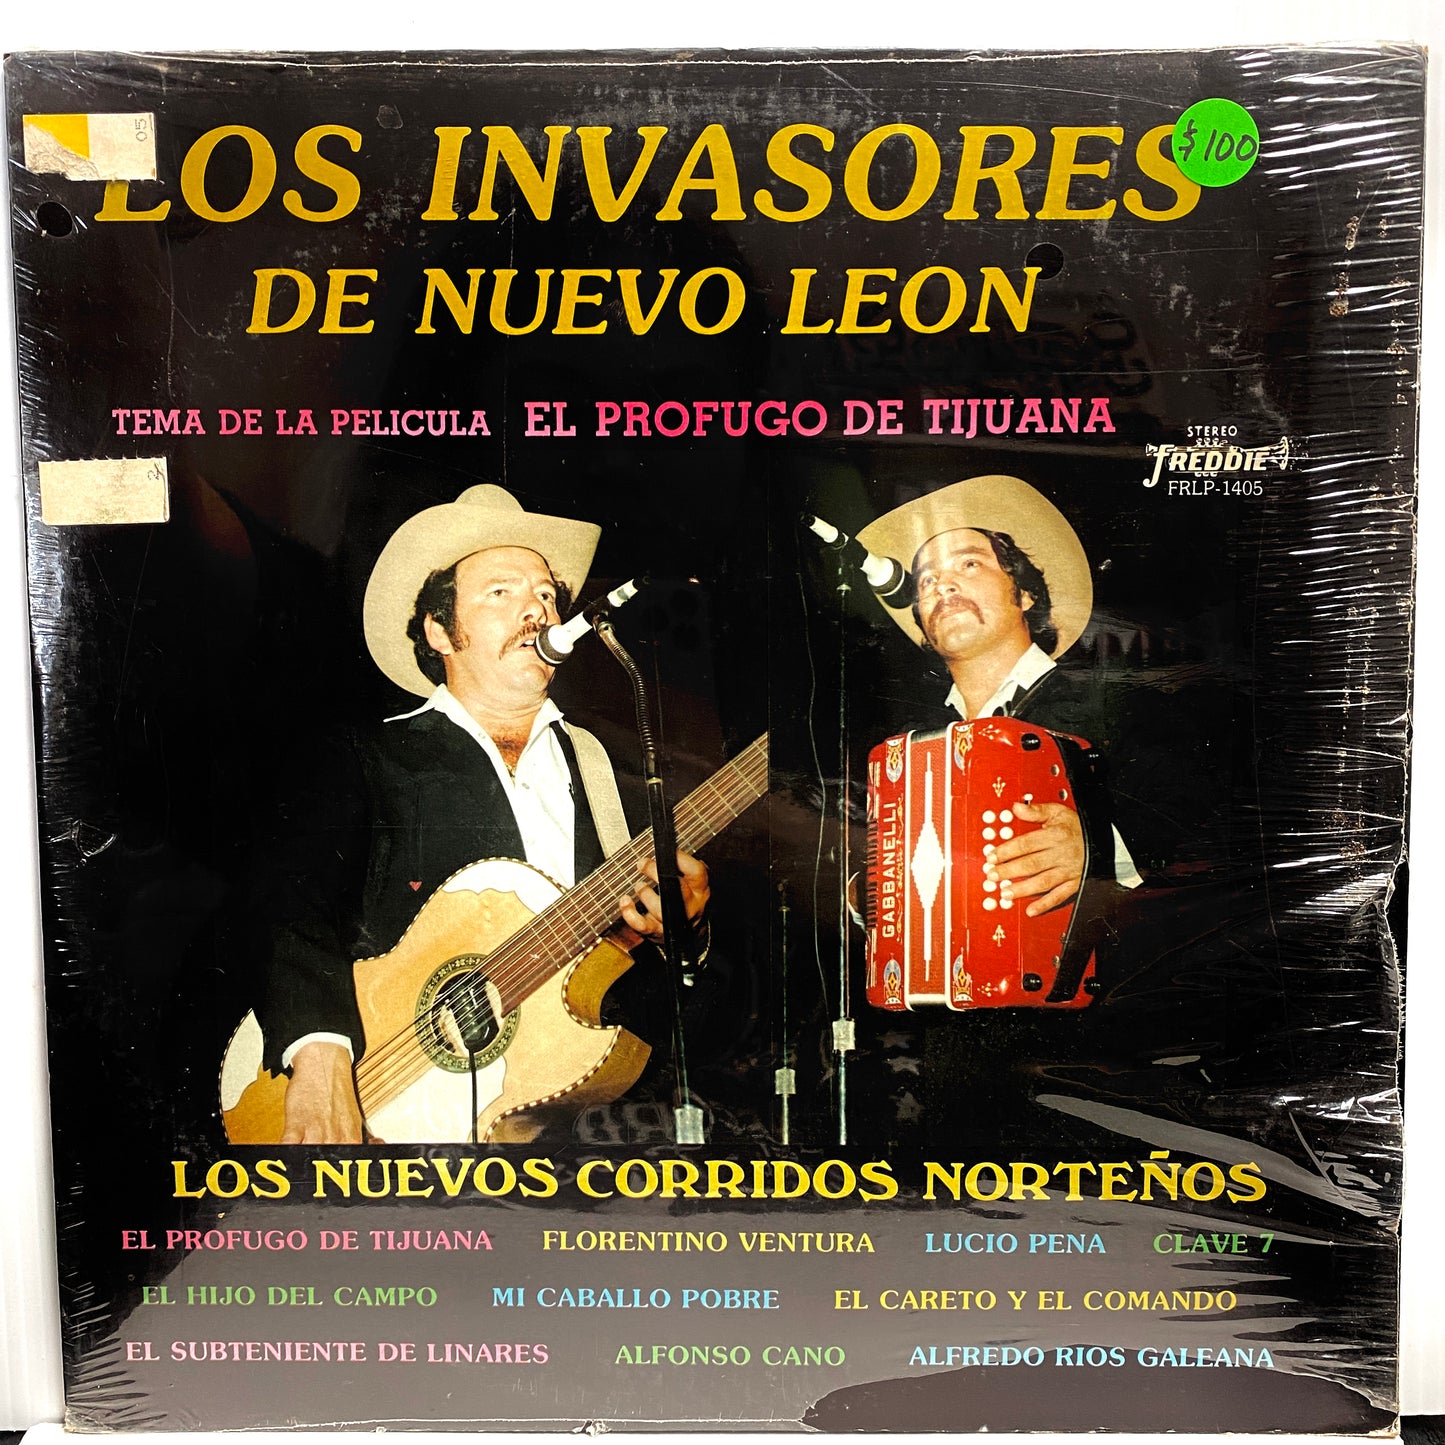 Los Invasores De Nuevo Leon – Tema De La Pelicula: El Profugo De Tijuana - Los Nuevos Corridos Norteños (Vinyl)